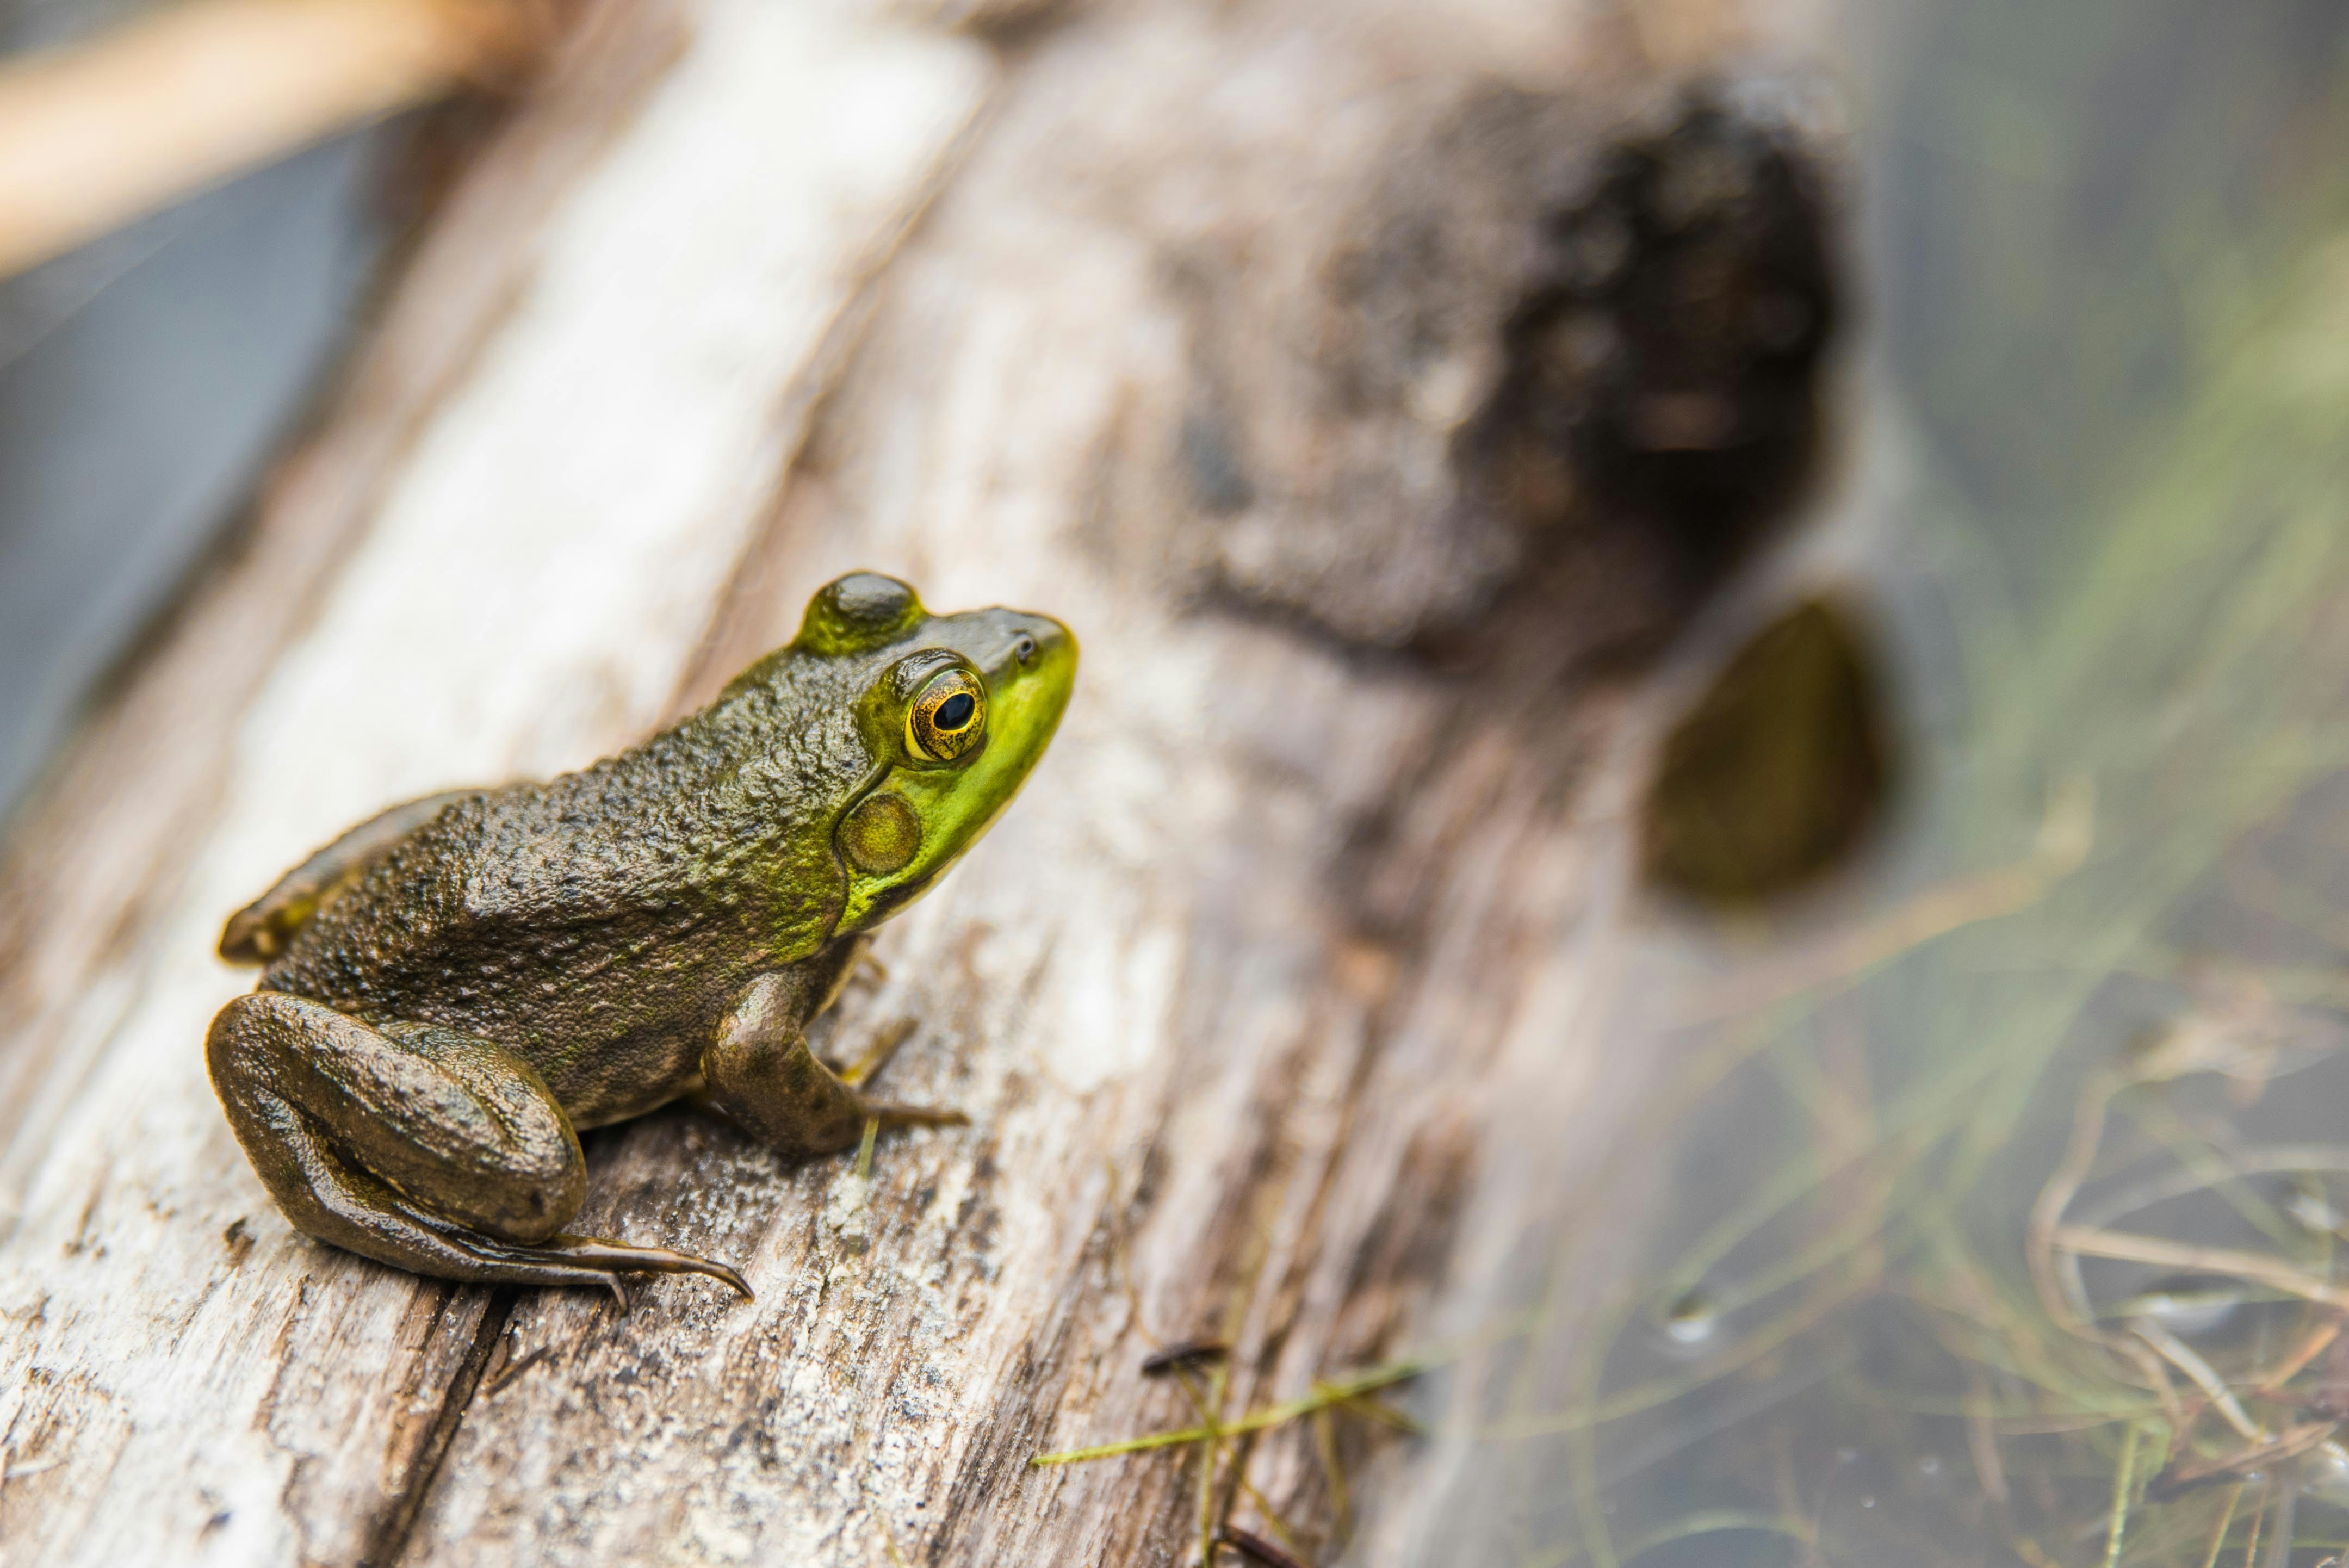   Frog on a log. Photo by Jared Evans on Unsplash.